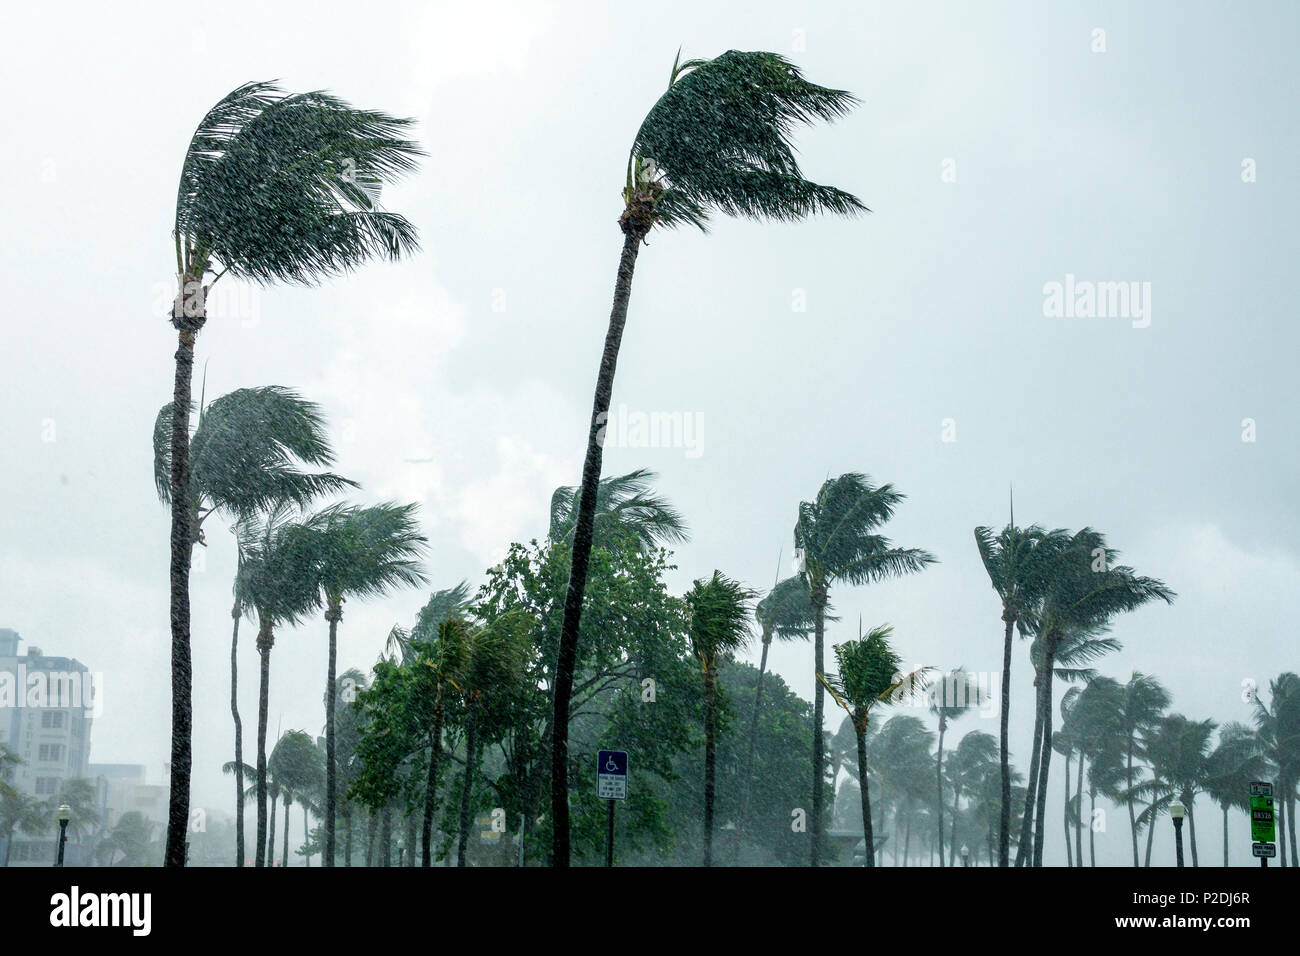 Miami Beach Florida,Lummus Park,vents de force de tempête tropicale,palmiers cinants,pluie,ciel gris nuageux,FL170730105 Banque D'Images